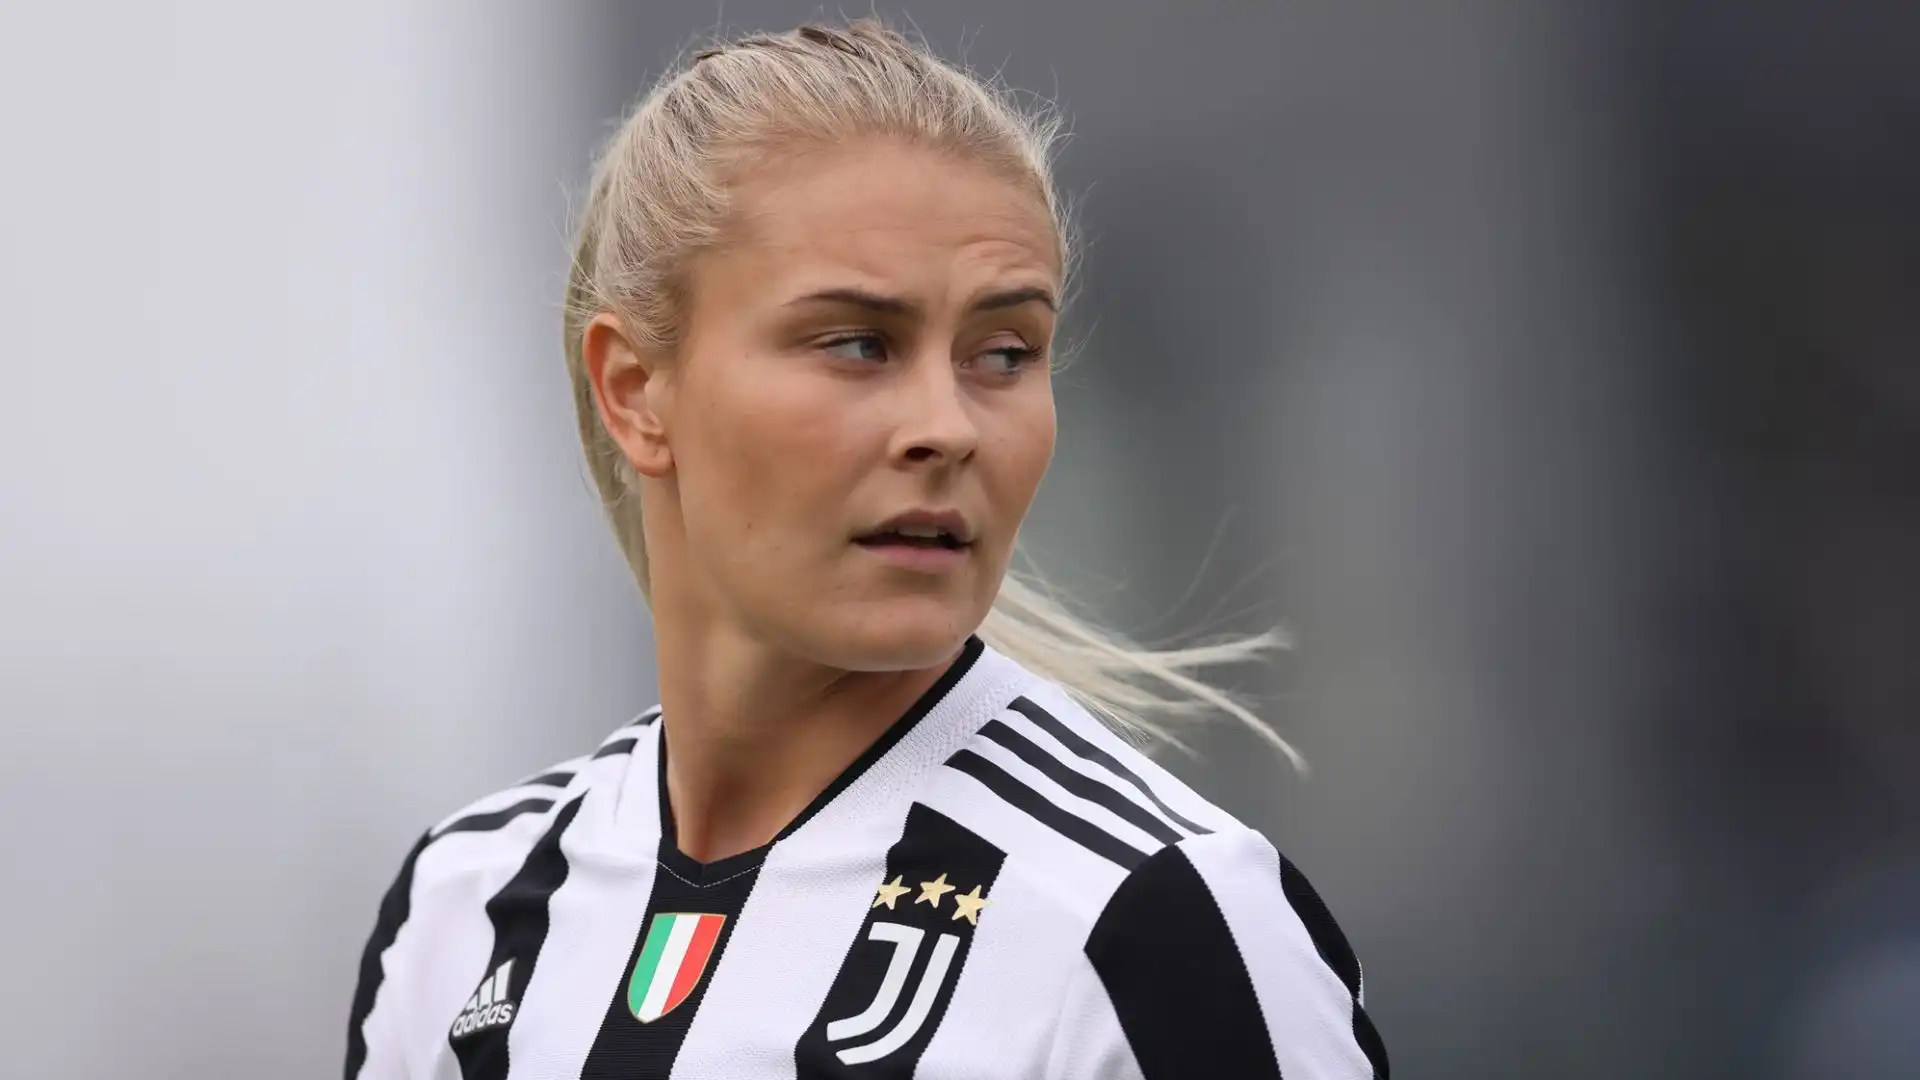 Il terzino svedese ha chiesto la cessione alla Juventus